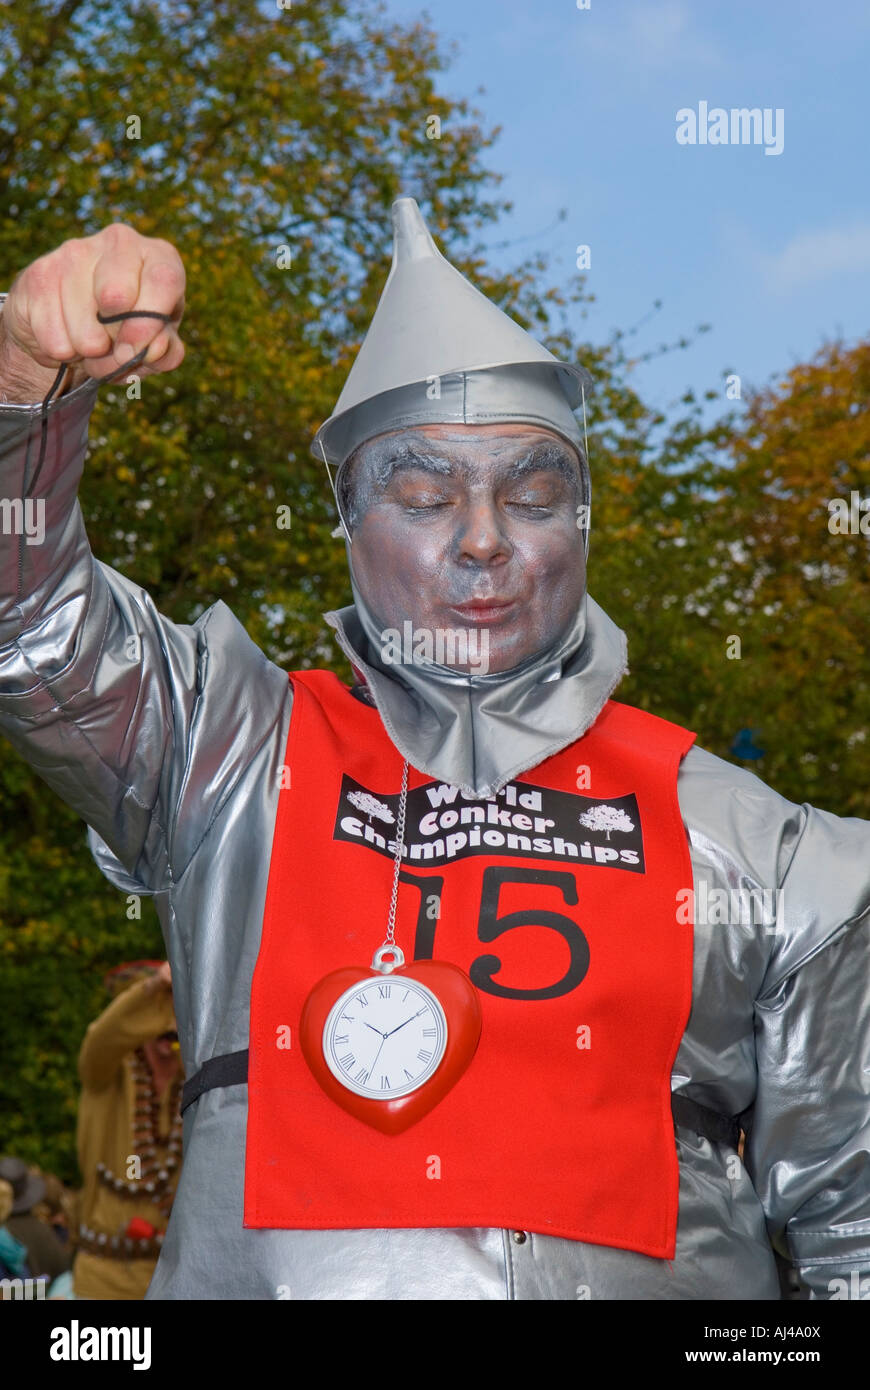 L uomo vestito da uomo di stagno al mondo Conker Championships Foto Stock